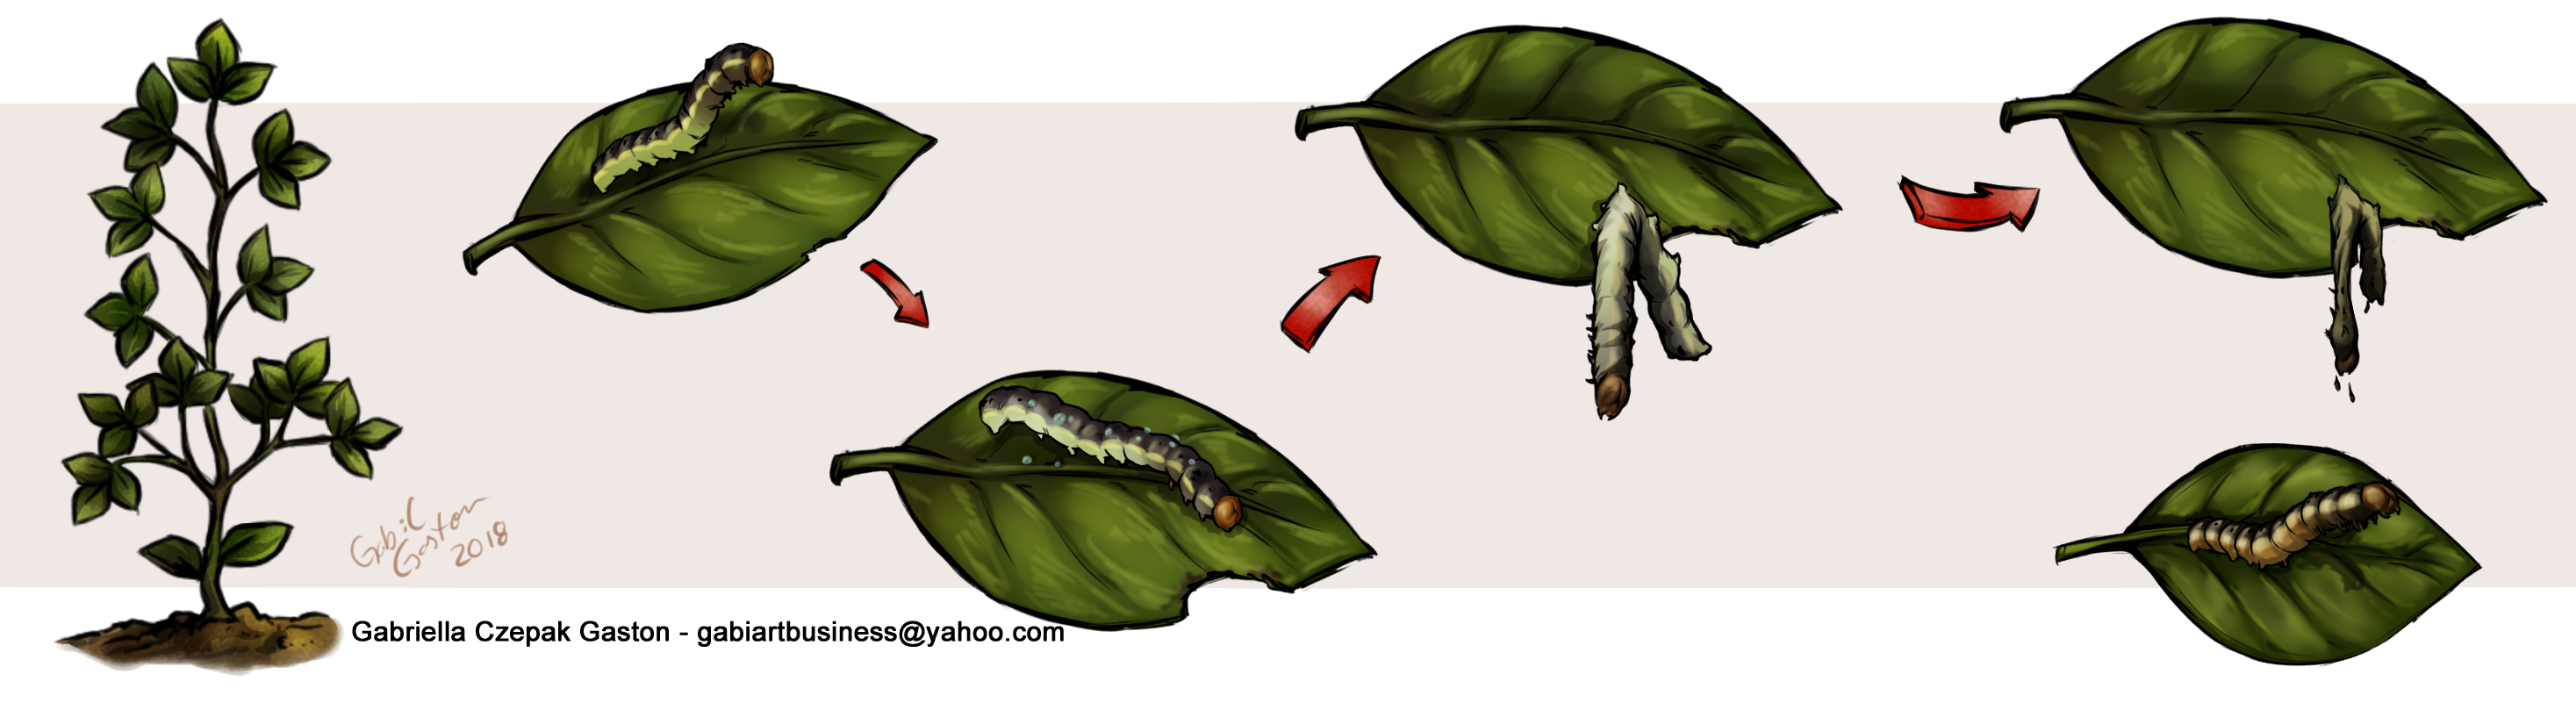 Figura 2 - Sucessão de sintomas e comportamento de uma lagarta provocados pela infecção viral após a ingestão de folhas contaminadas com Baculovírus